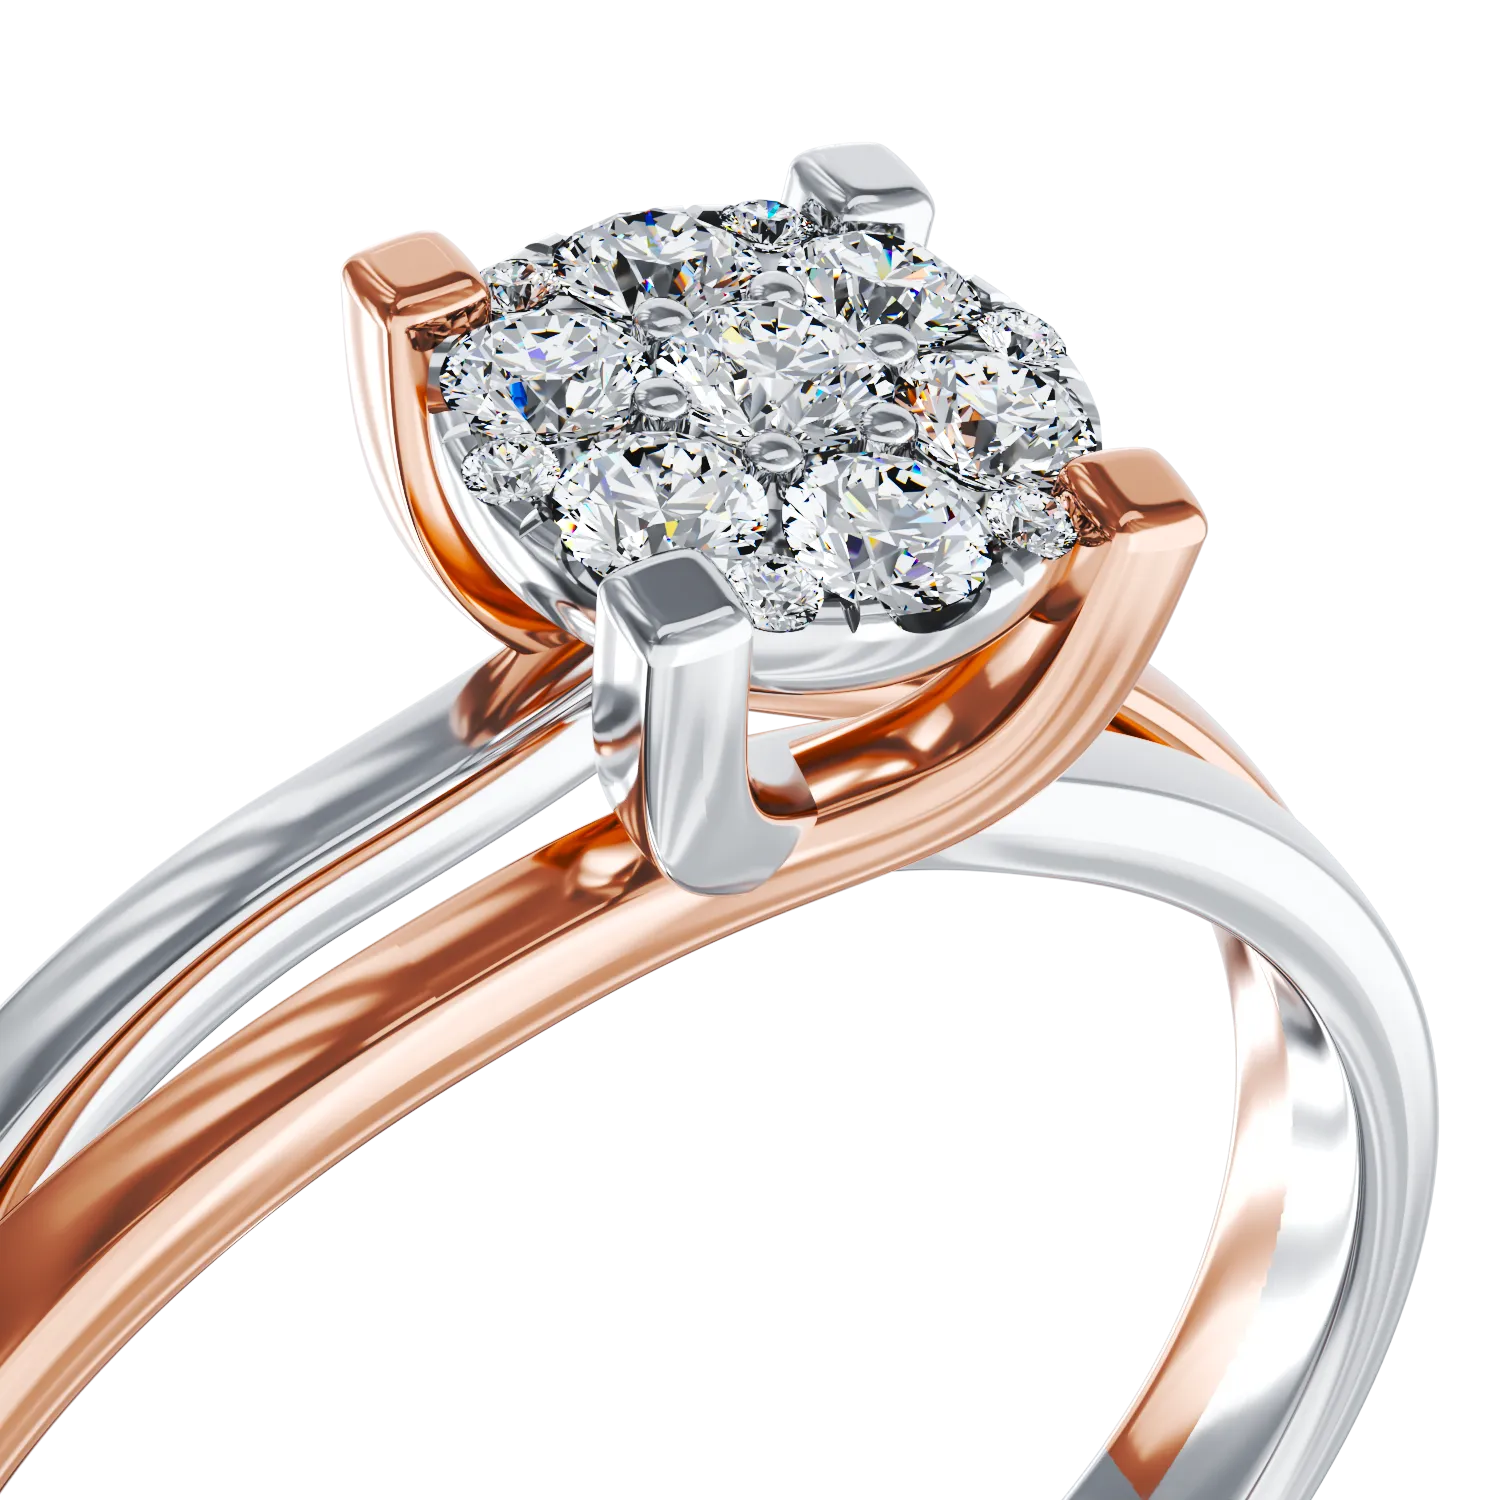 Pierścionek zaręczynowy 18-karatowy z białego różowego złota z diamentami 0.24ct